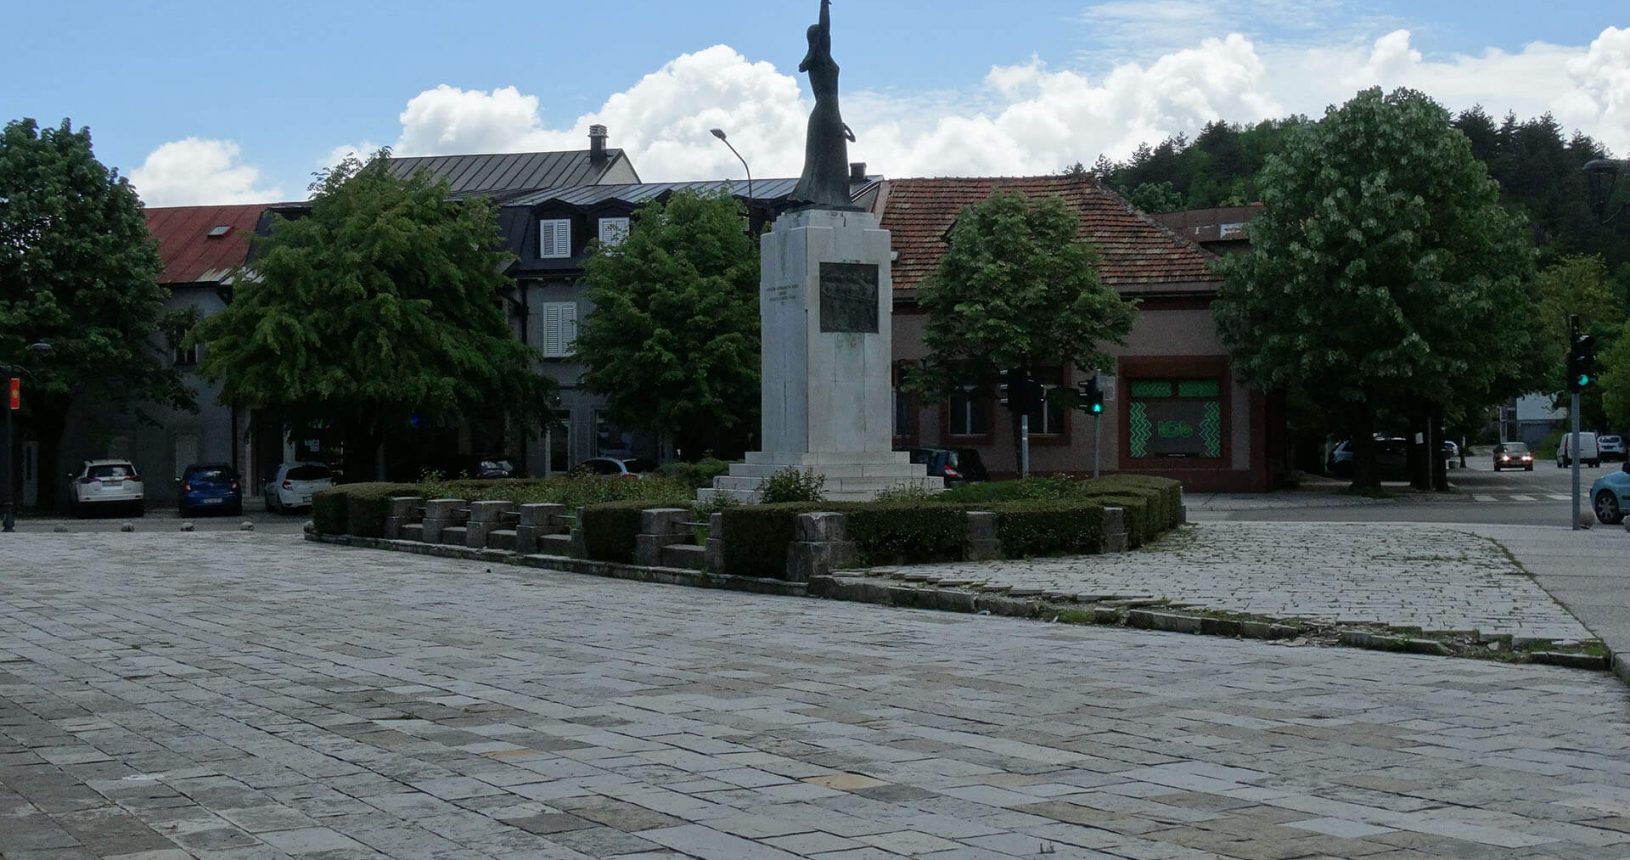 On the square in Cetinje